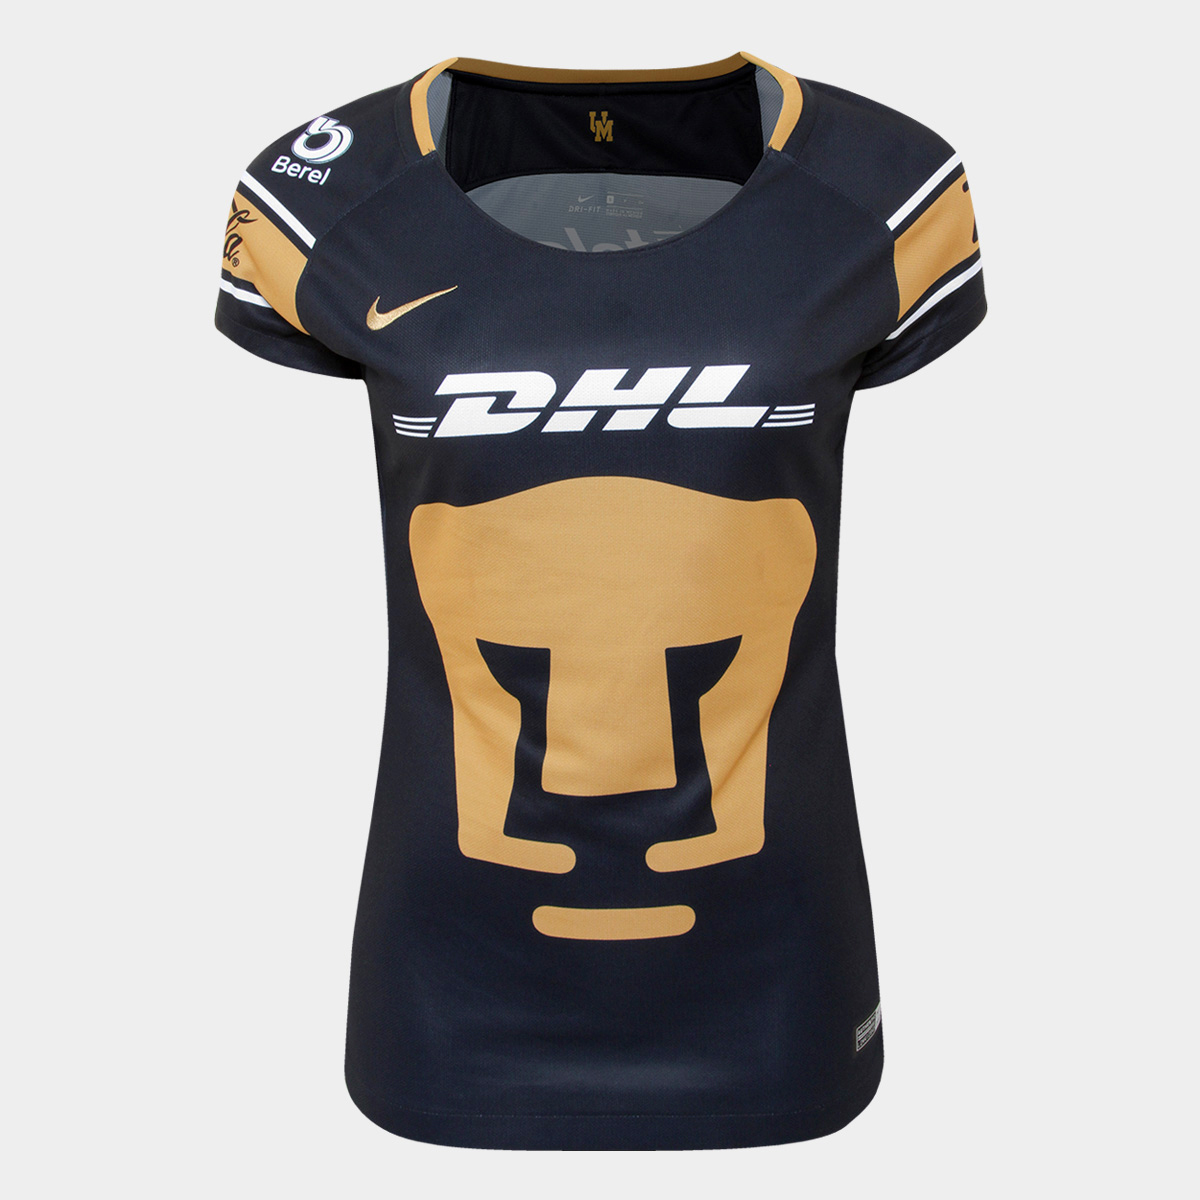 Camiseta UNAM Pumas Mujer Segunda equipación 2017-2018